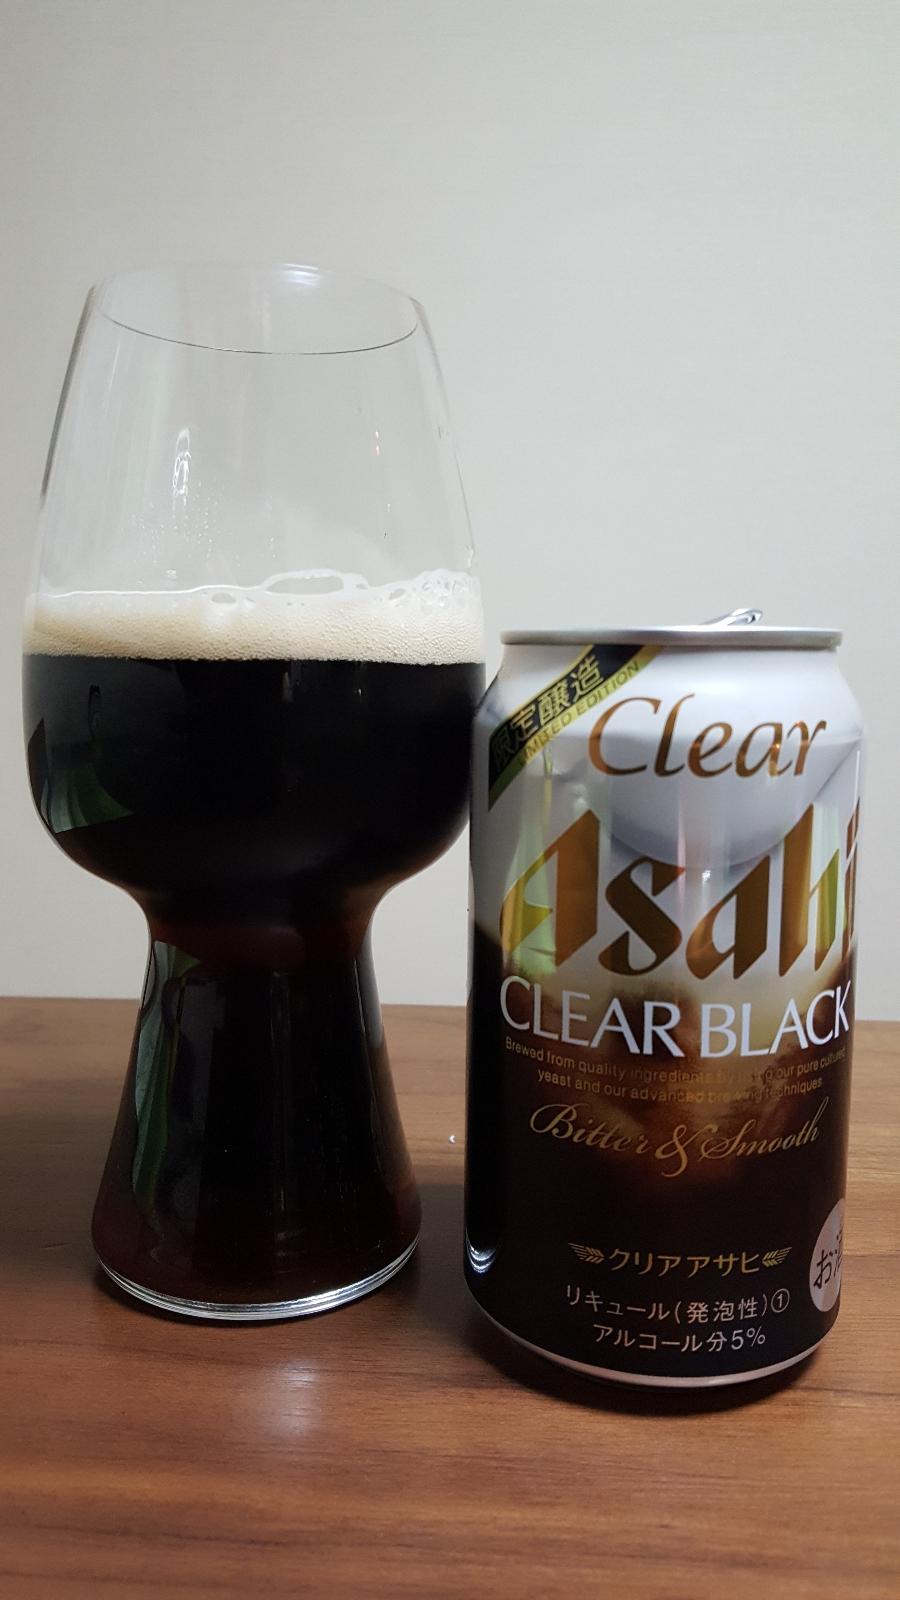 Asahi Clear Black